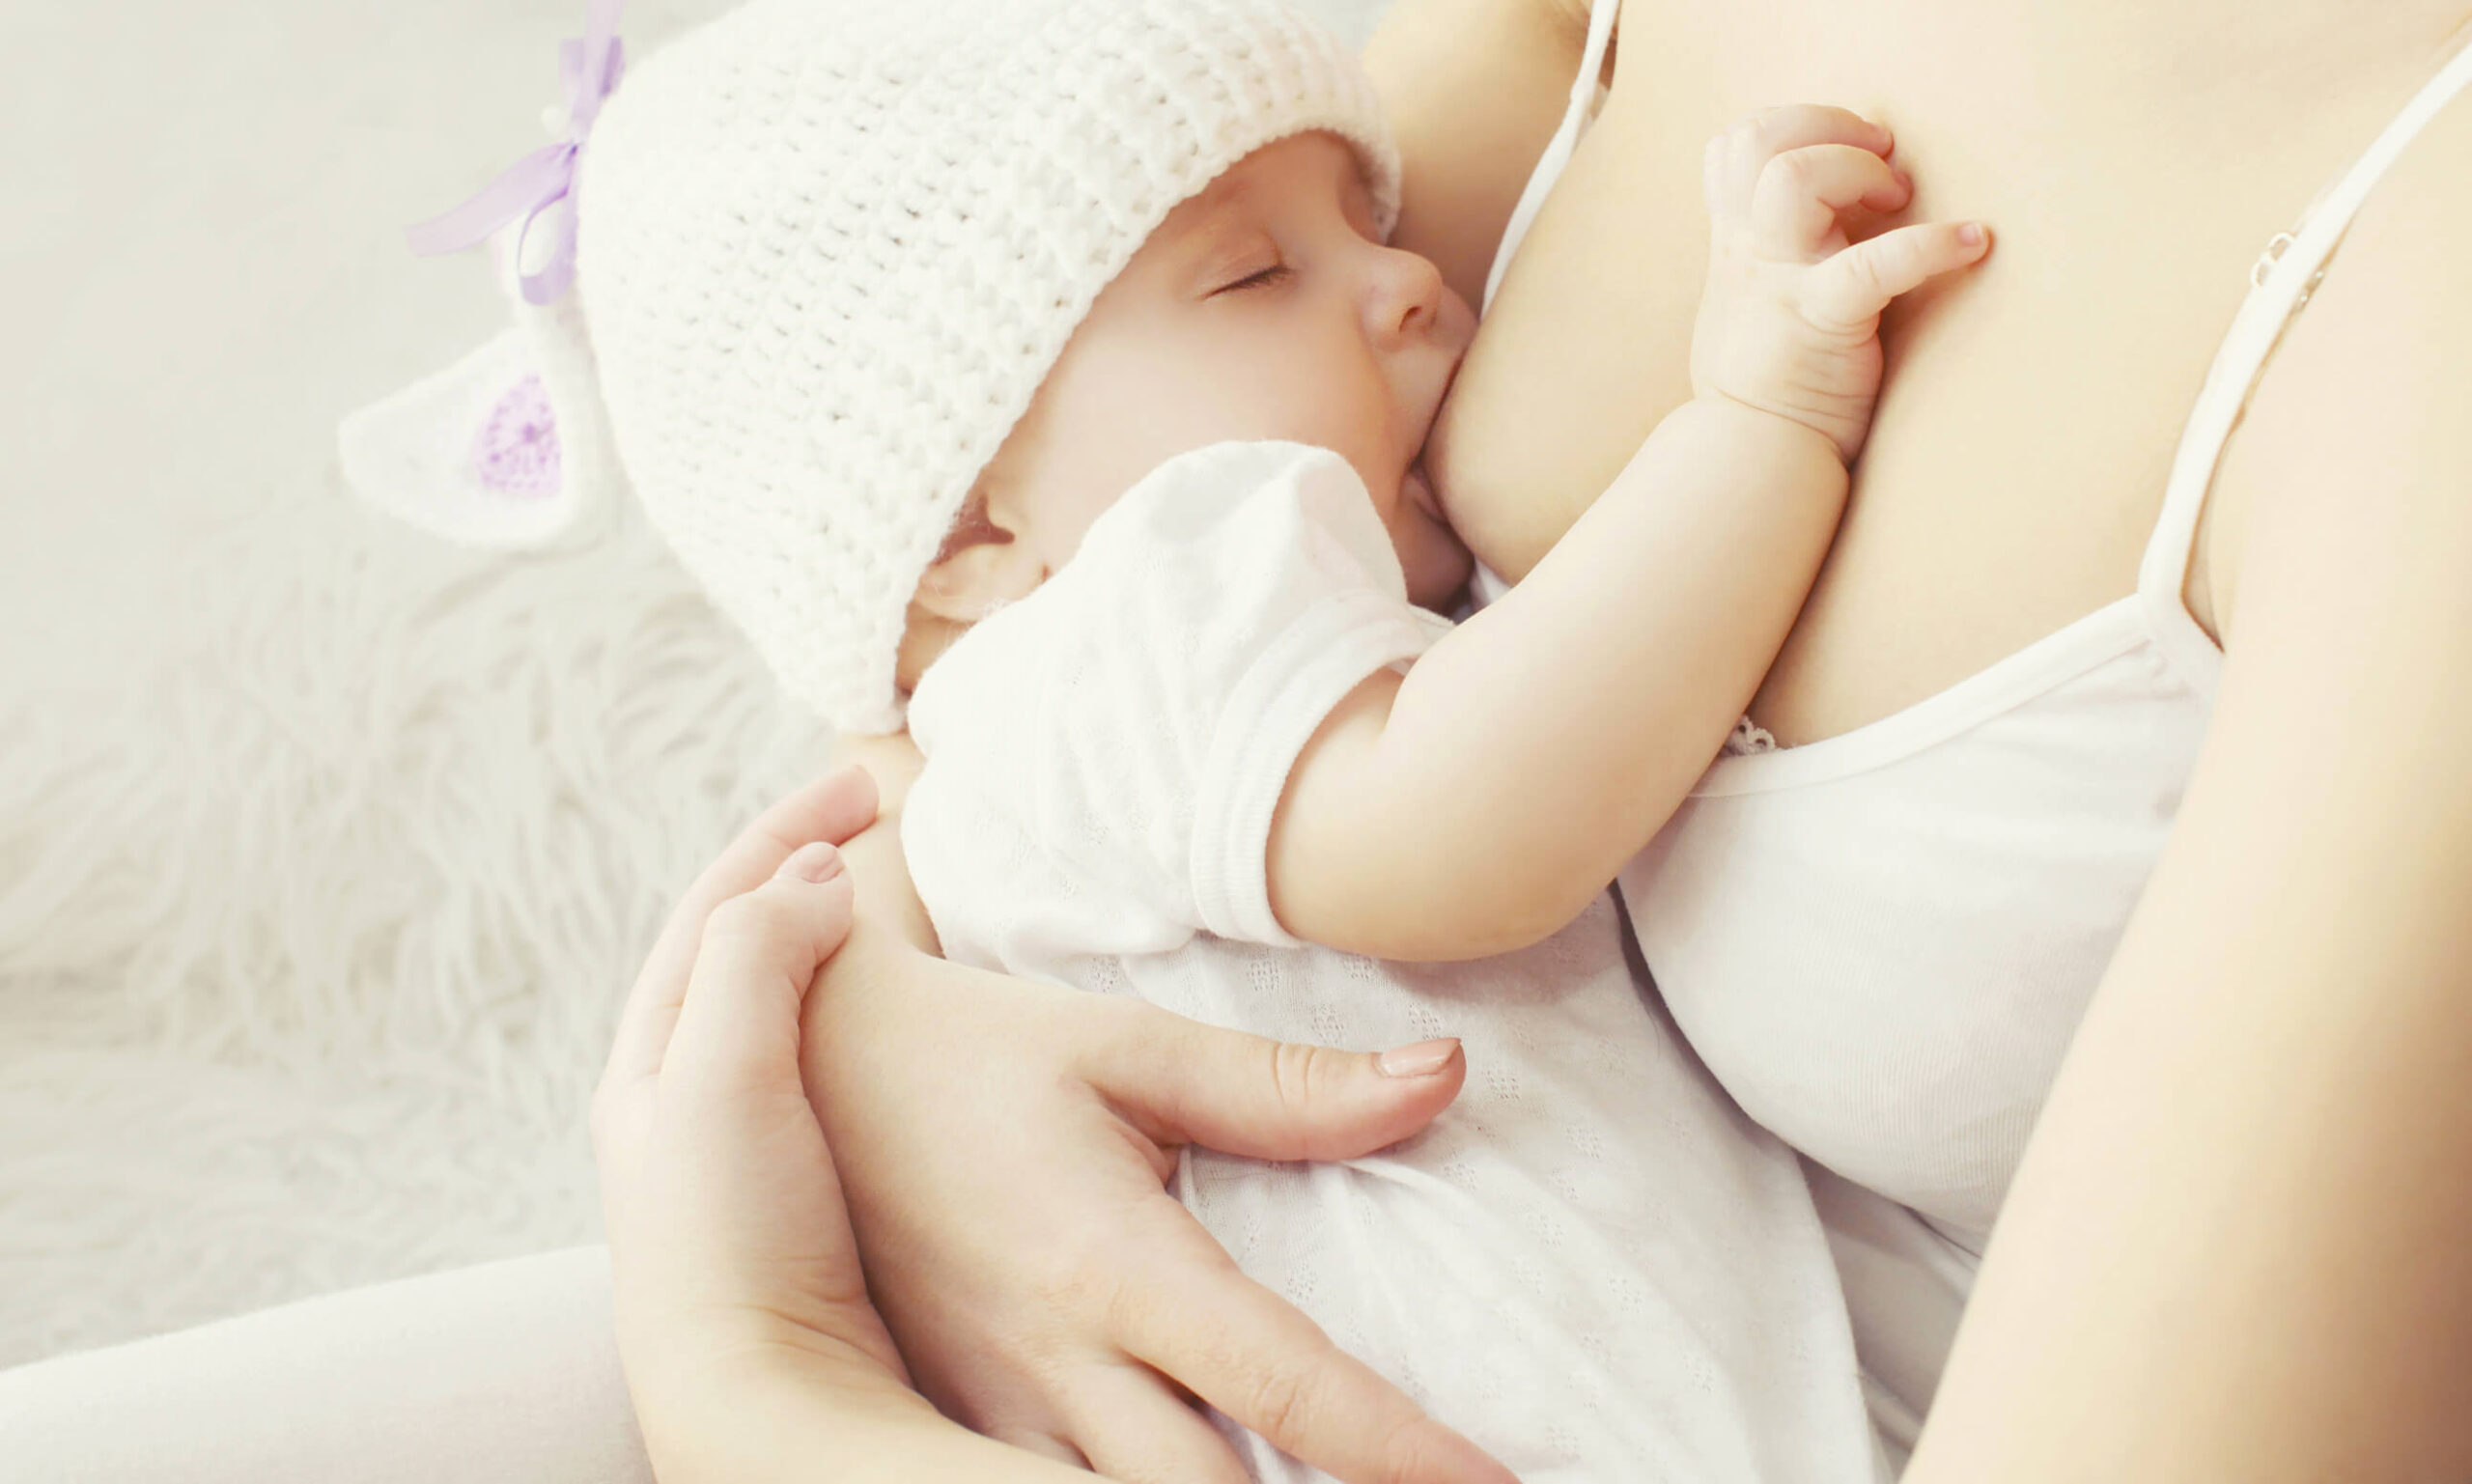 Kobiety rodzące pierwsze dziecko wymagają edukacji na temat karmienia piersią